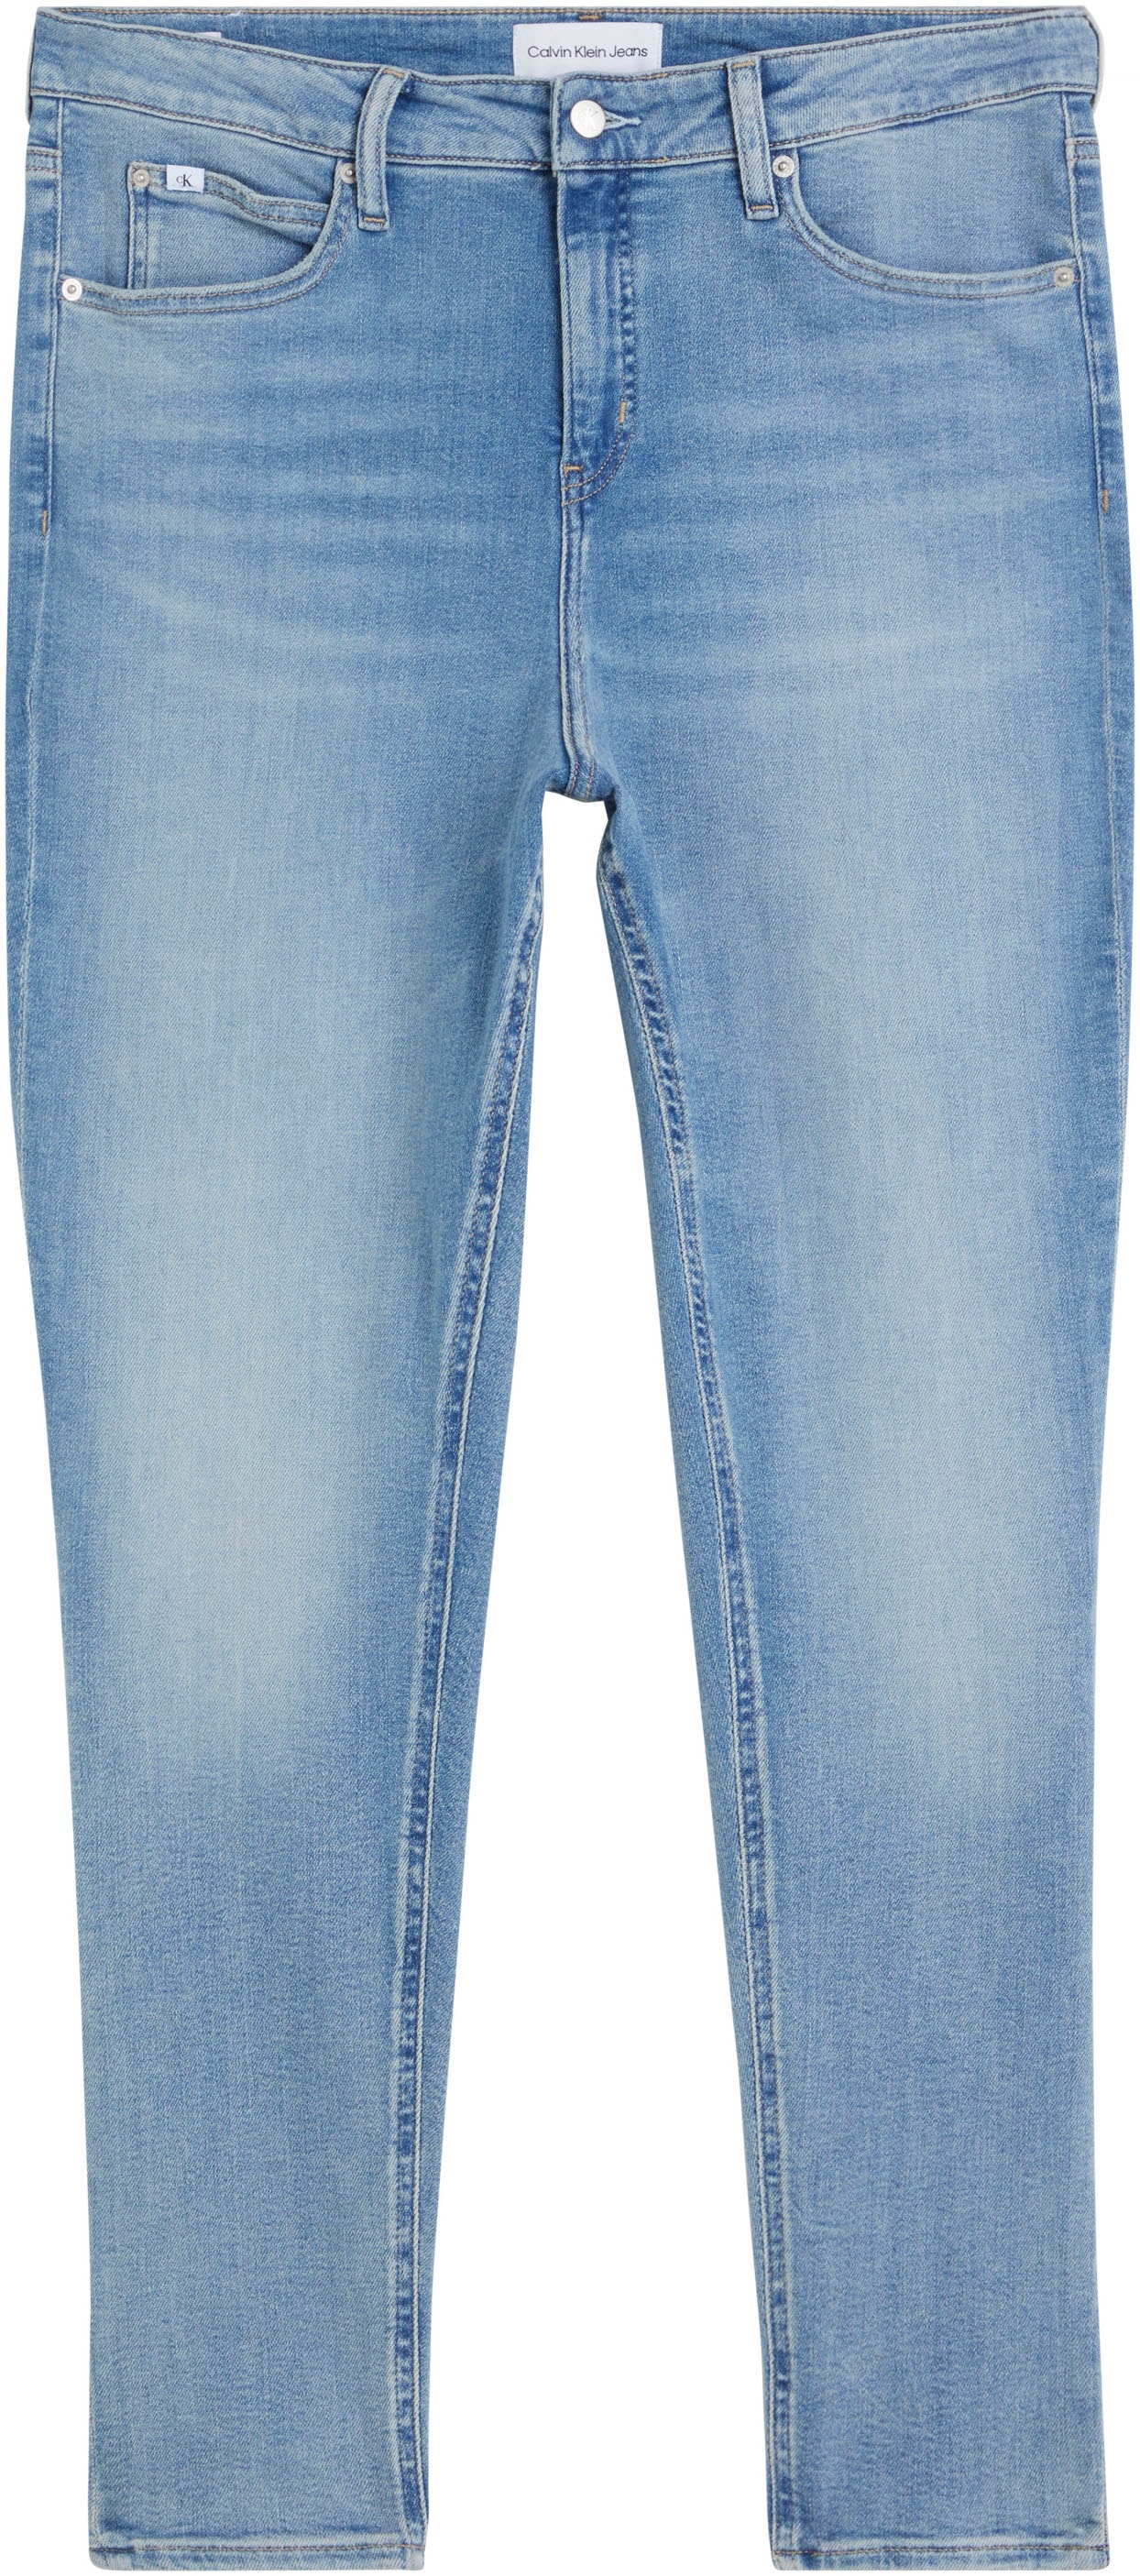 Größen kaufen Damen große jetzt online Jeans